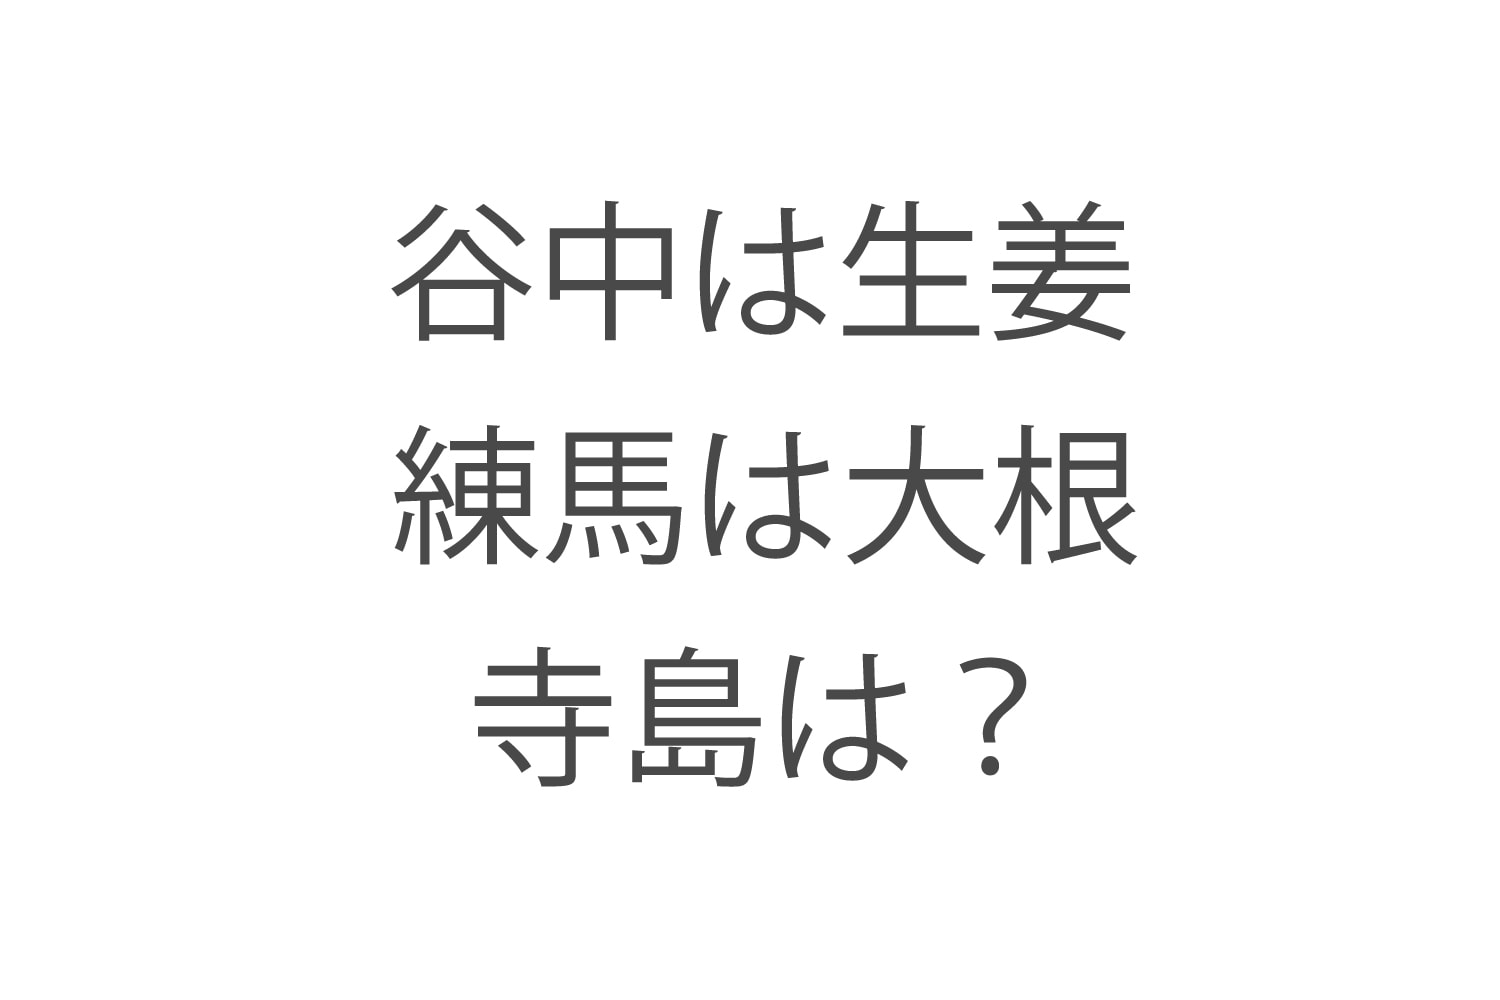 【野菜力診断】Q.代表的な江戸東京野菜、 練馬は大根、谷中は生姜、では寺島といえば？